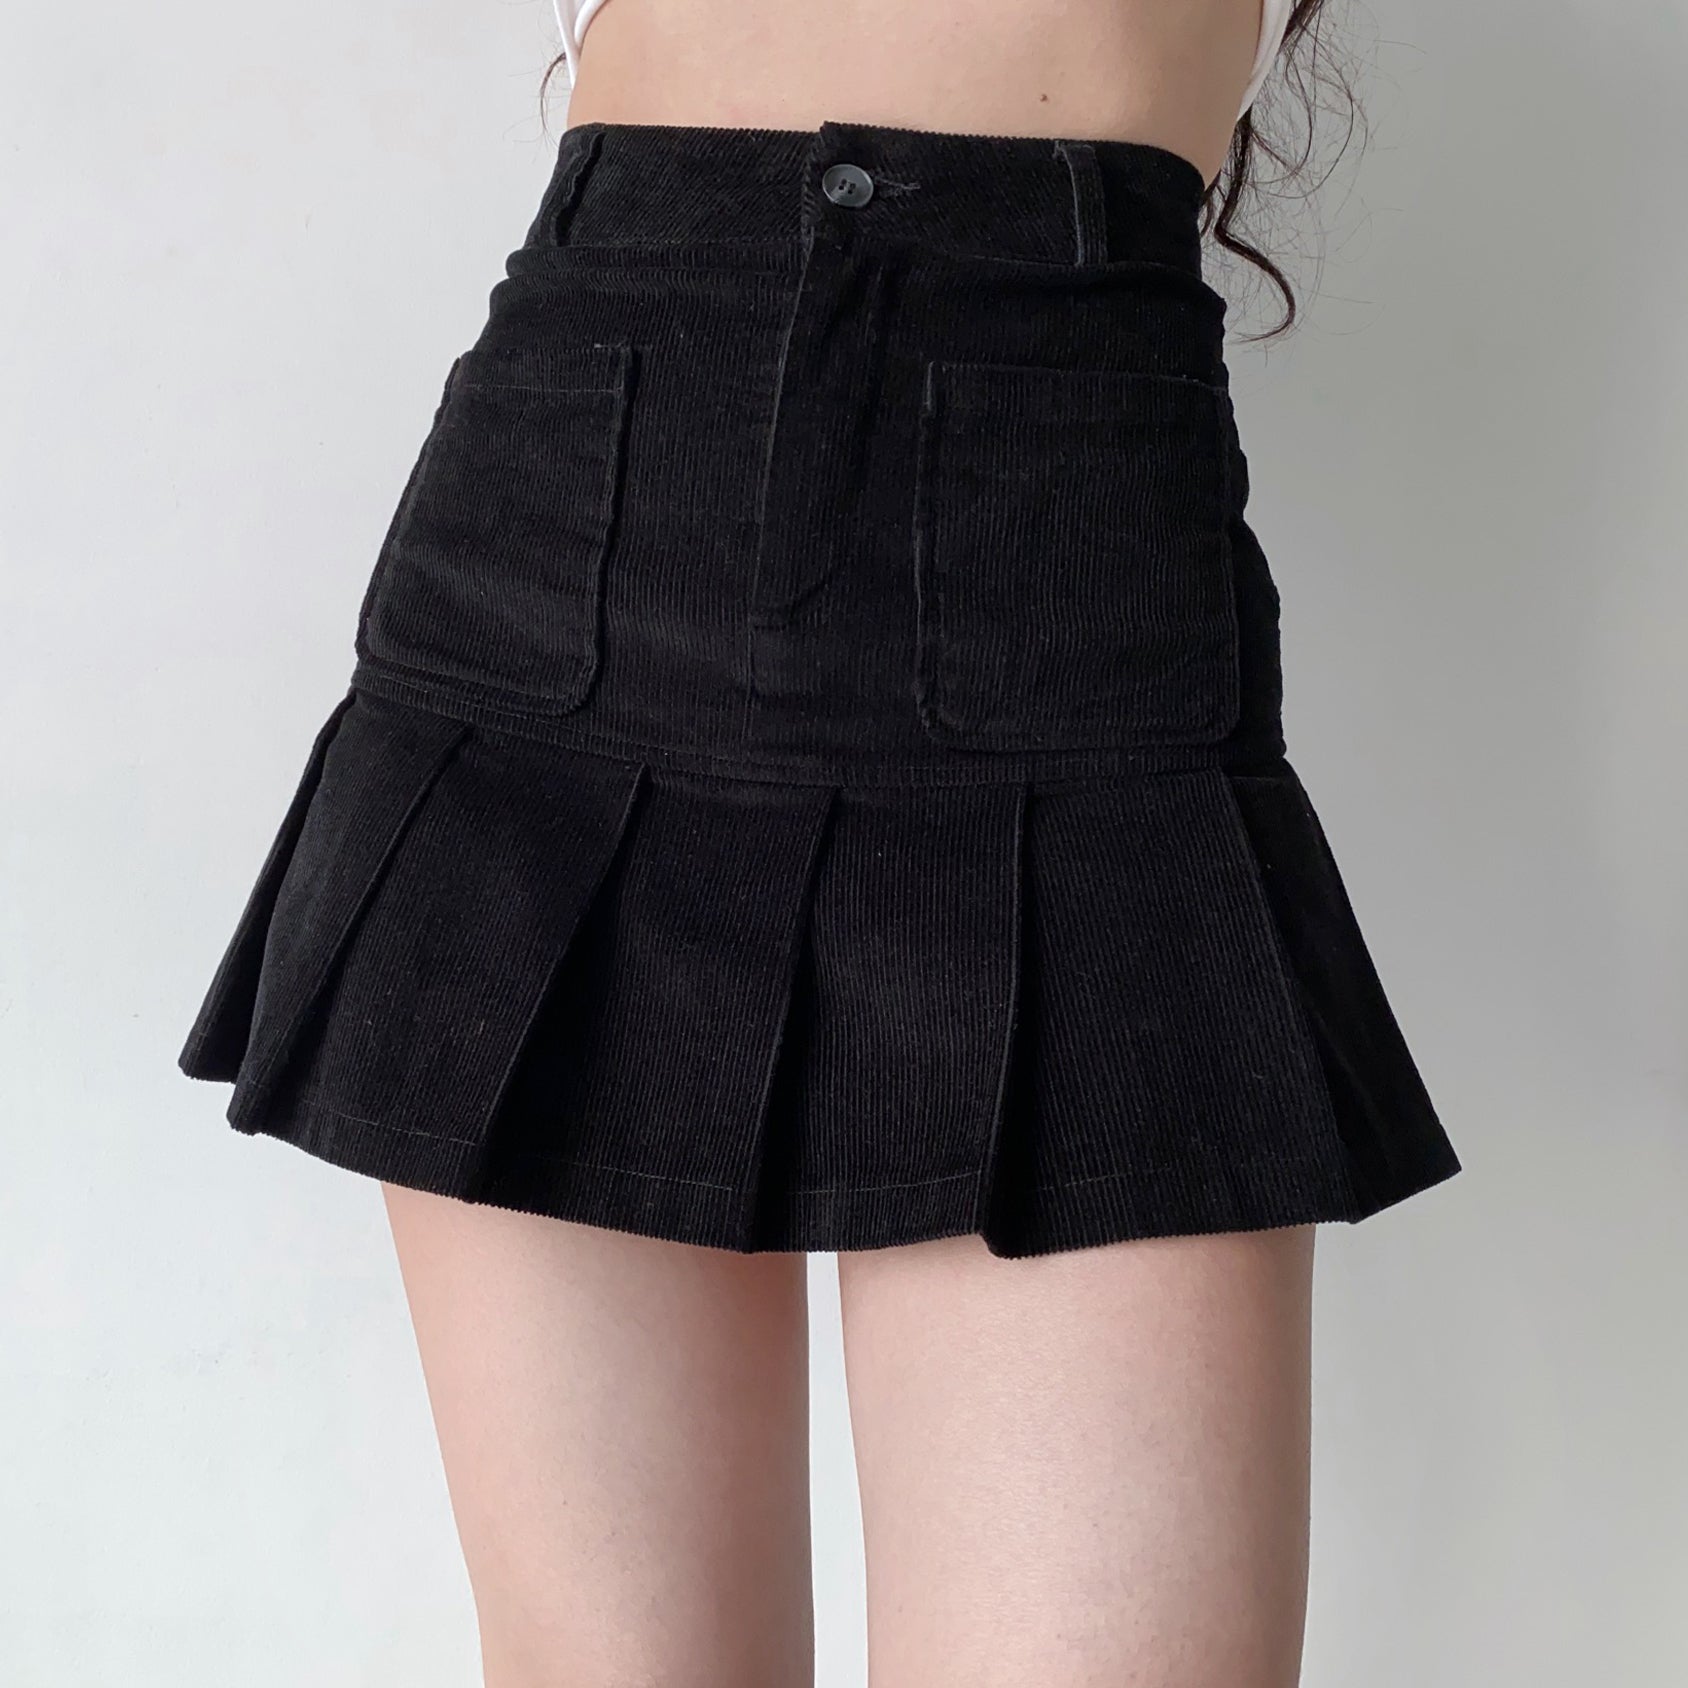 Wenkouban - Penny Corduroy Pleated Skirt